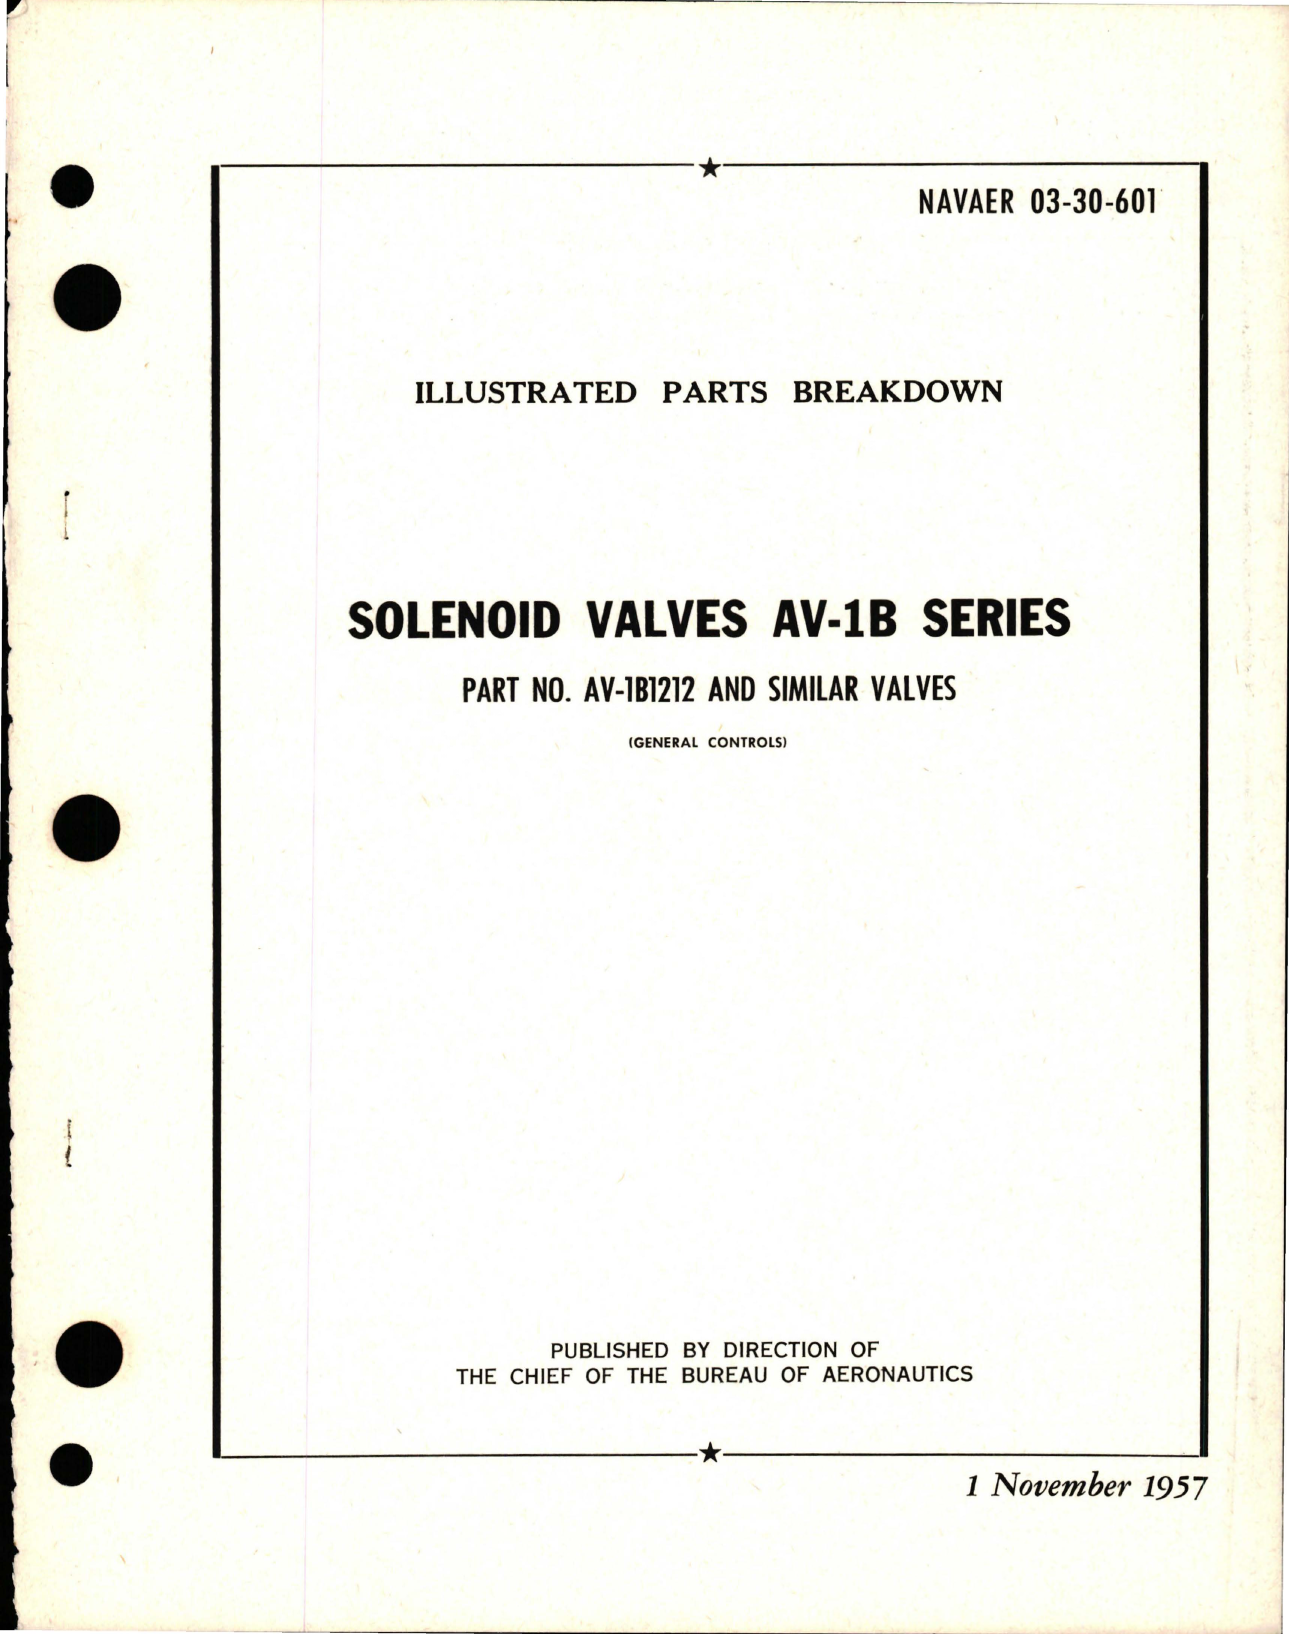 Sample page 1 from AirCorps Library document: Illustrated Parts Breakdown for Solenoid Valves - AV-1B Series - Part AV-1B1212 and Similar Valves